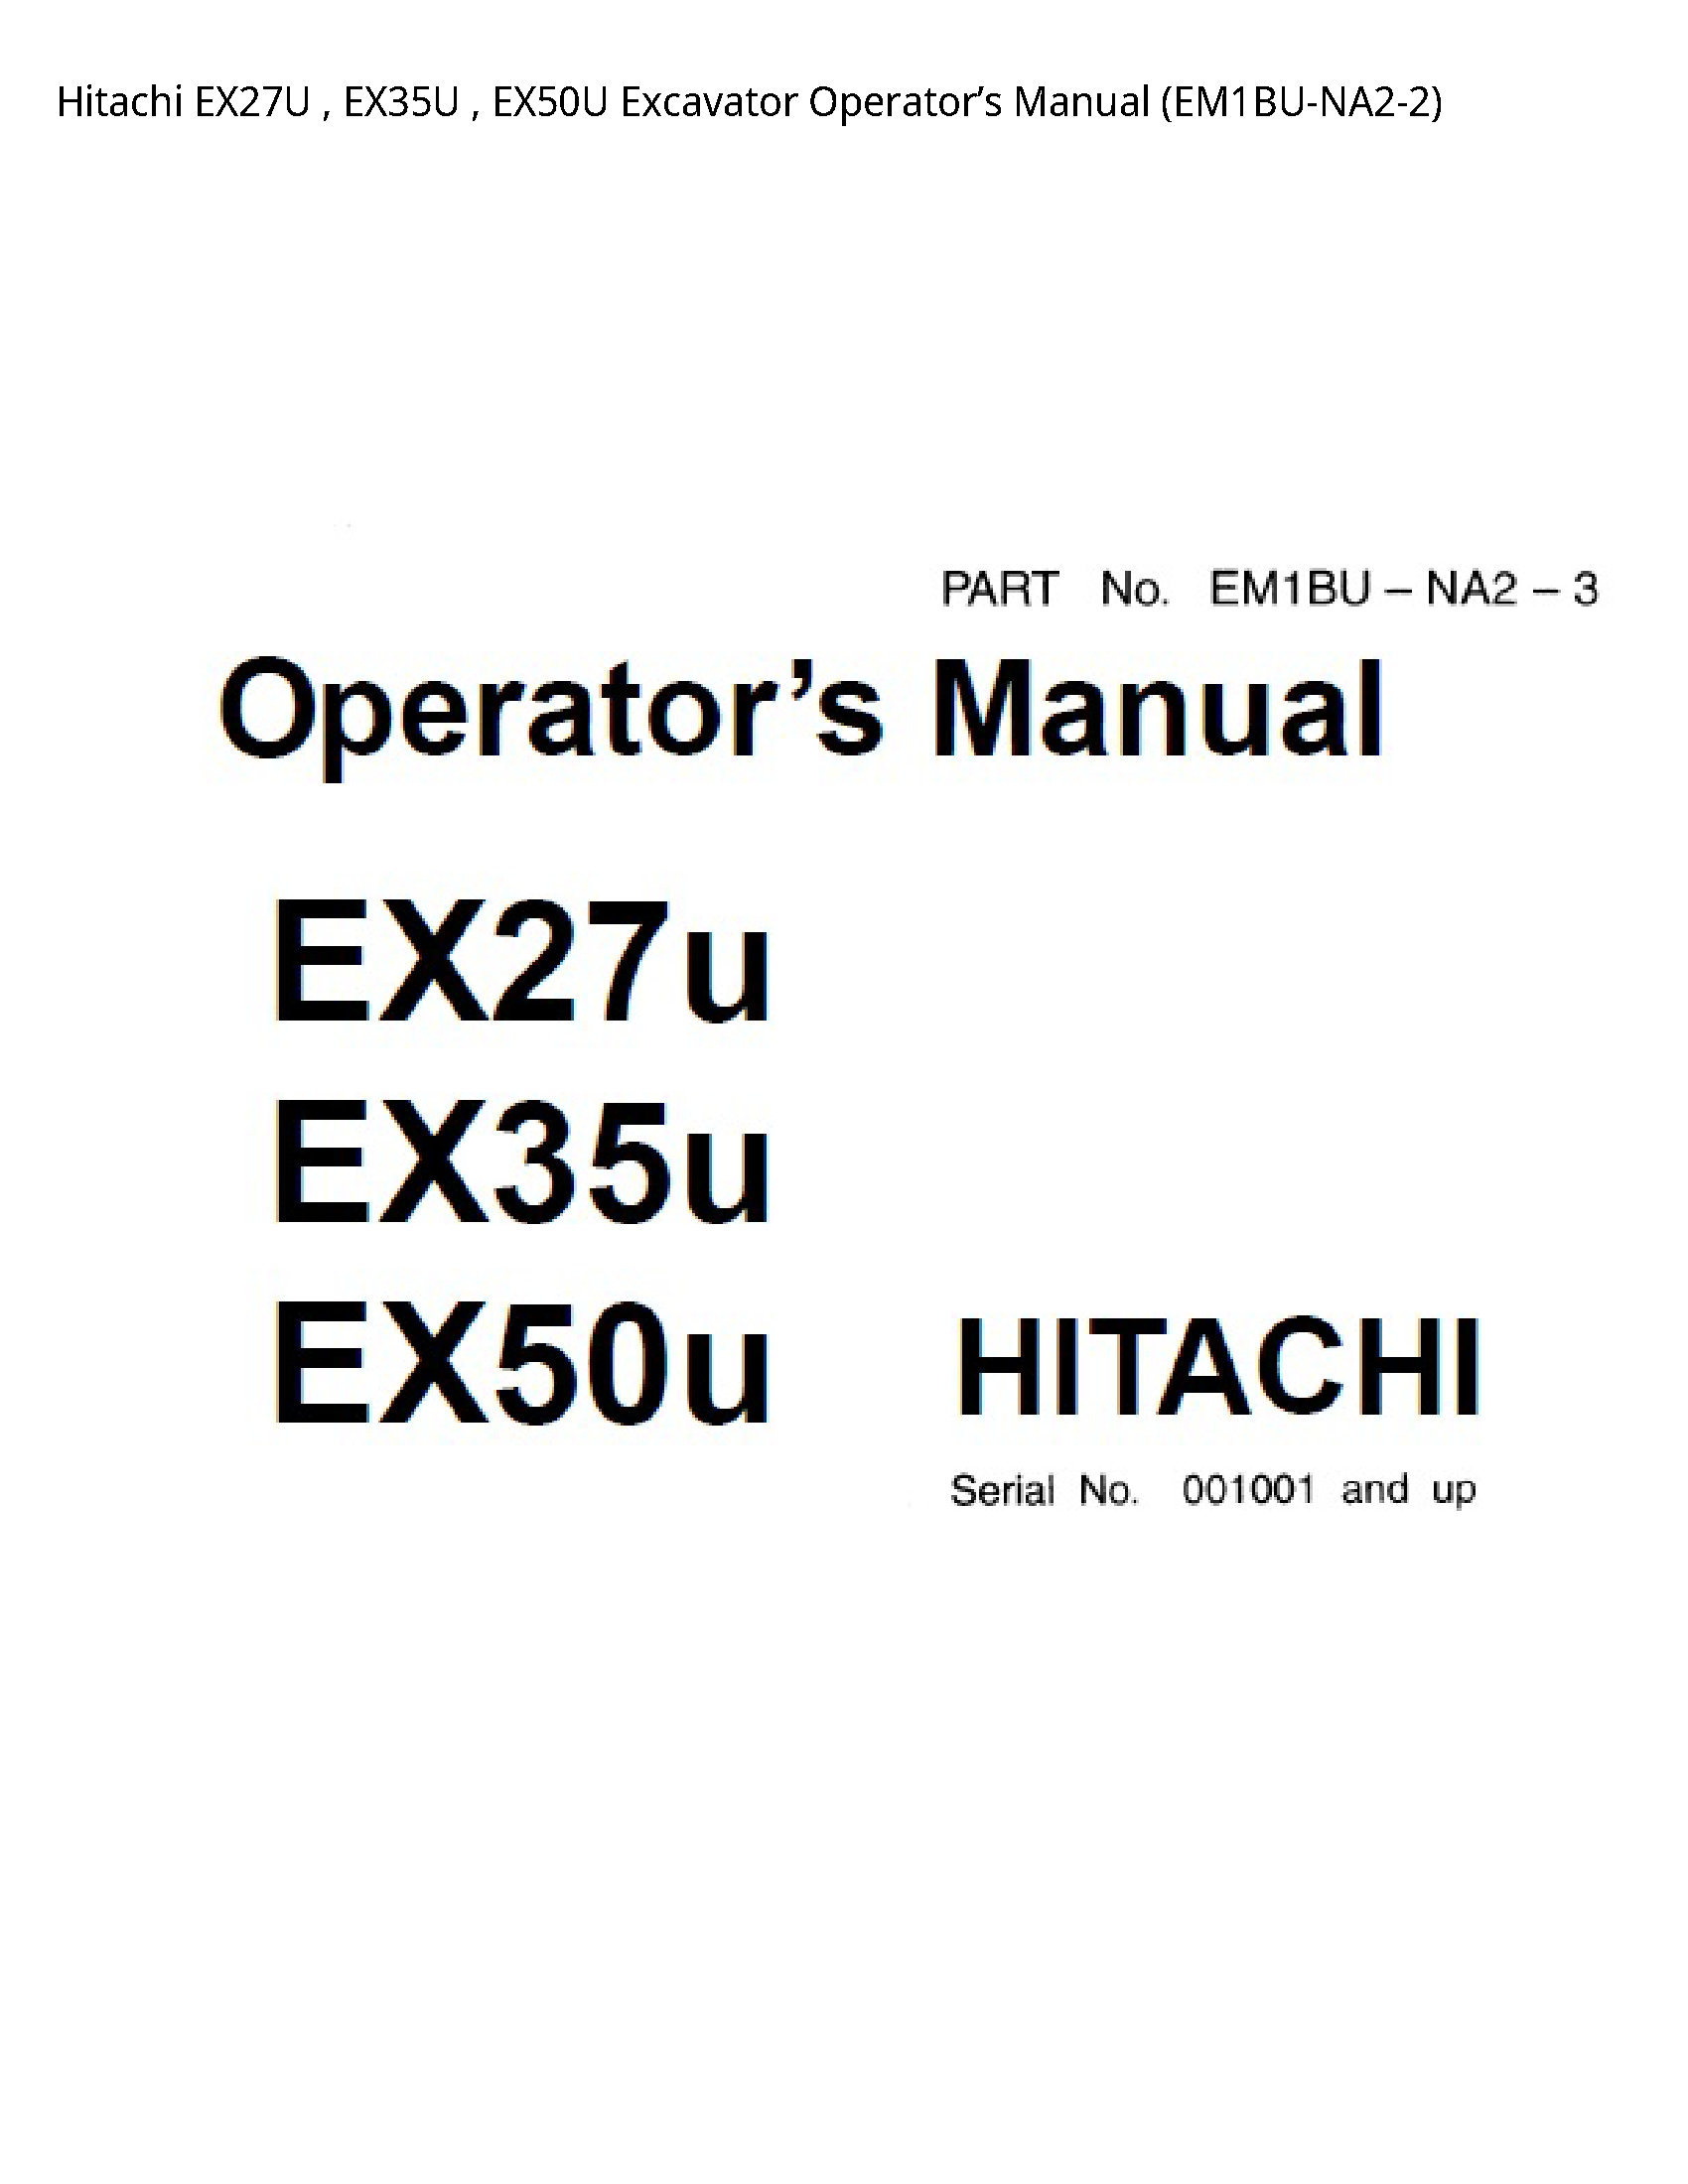 Hitachi EX27U Excavator Operator’s manual